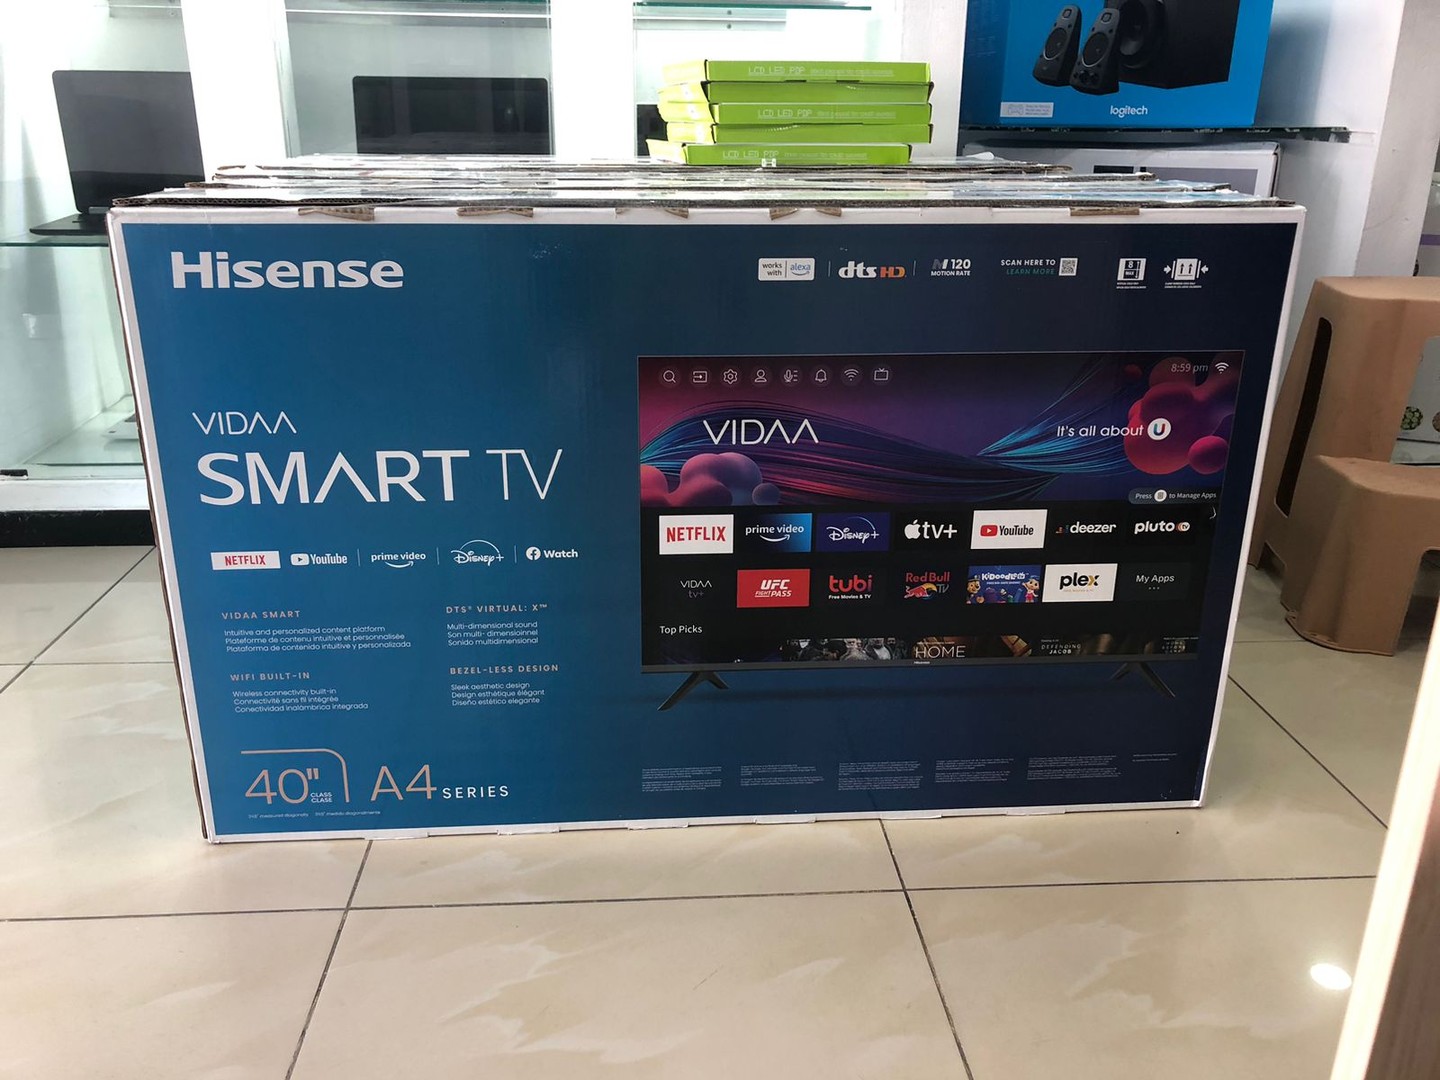 tv - Televisor Hisense Smart TV 40`` - A4 - Vidaa 2